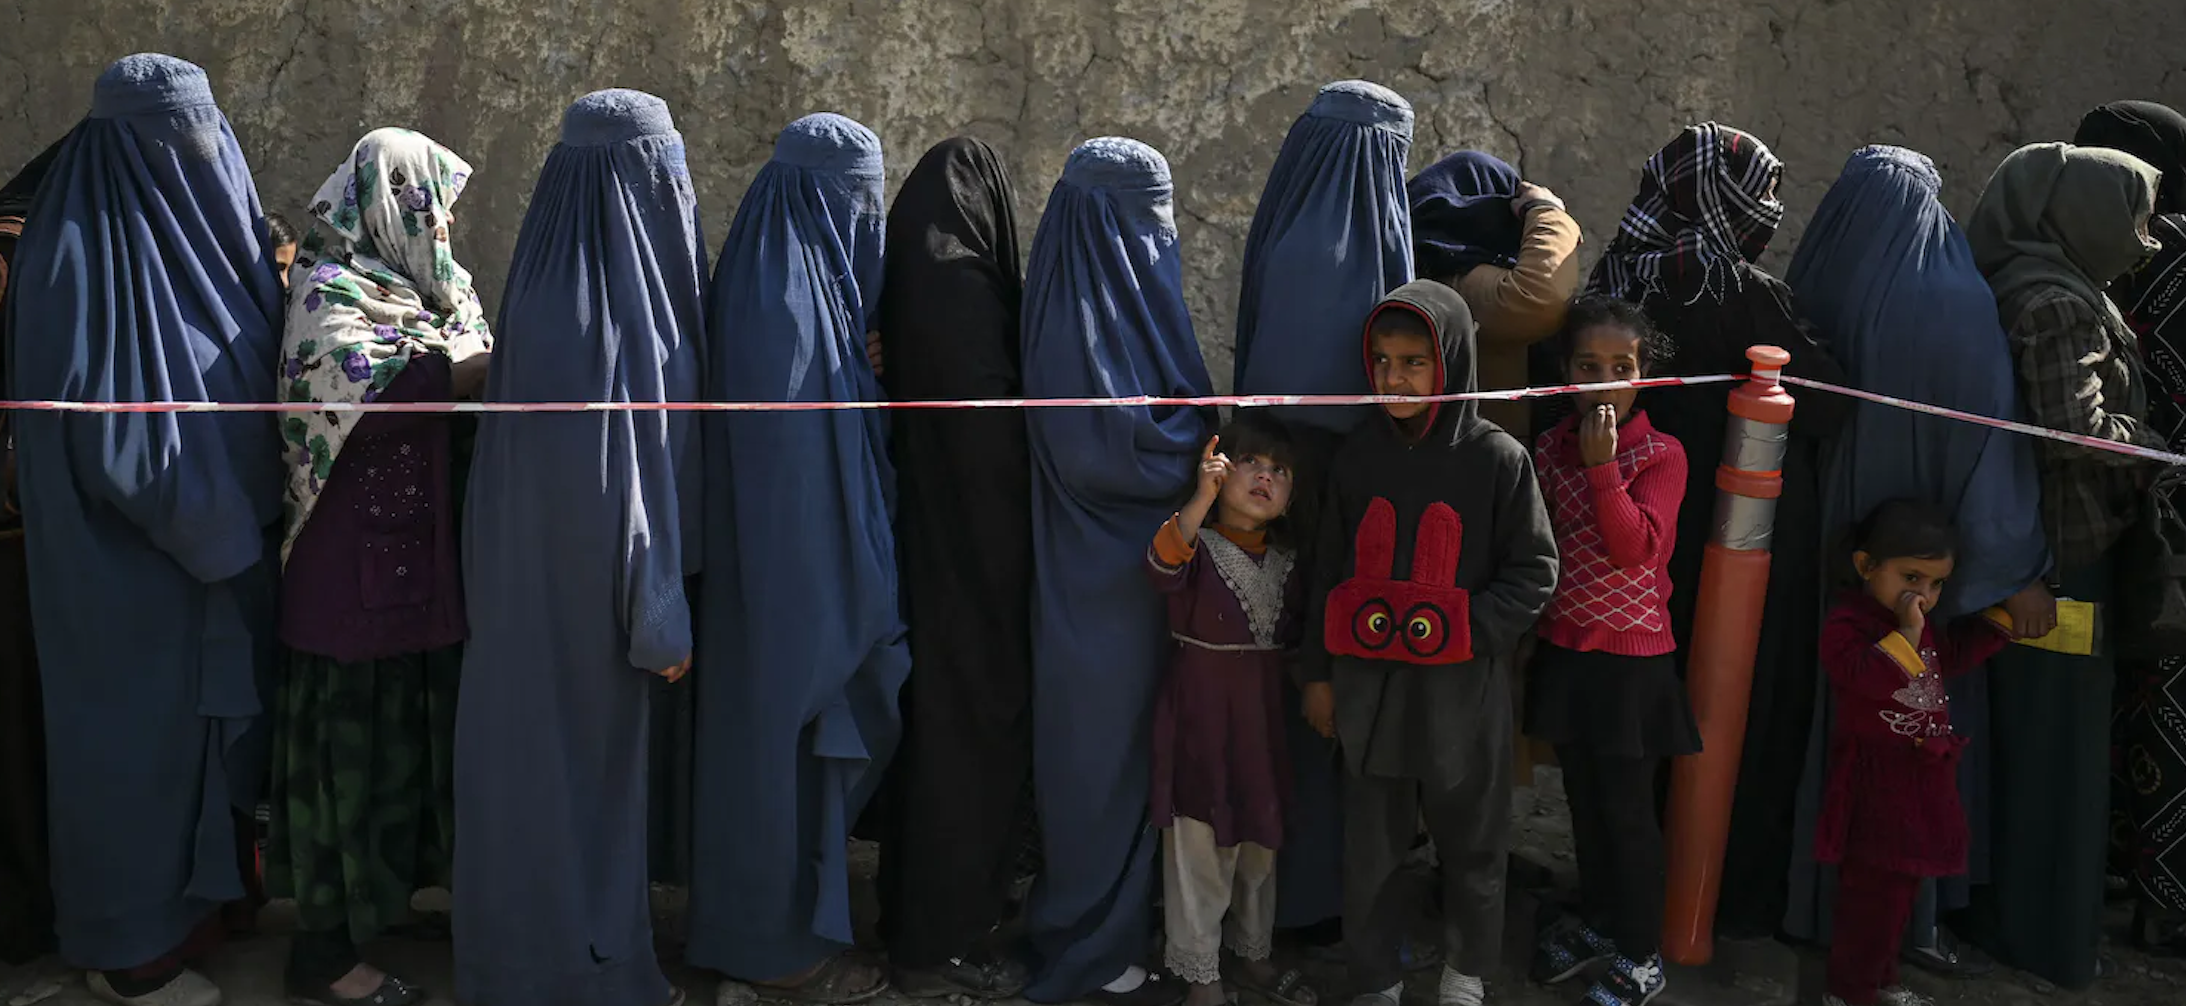 Femmes en Afghanistan : Ce que les talibans ne veulent pas que vous voyiez - La rage d'une femme artiste